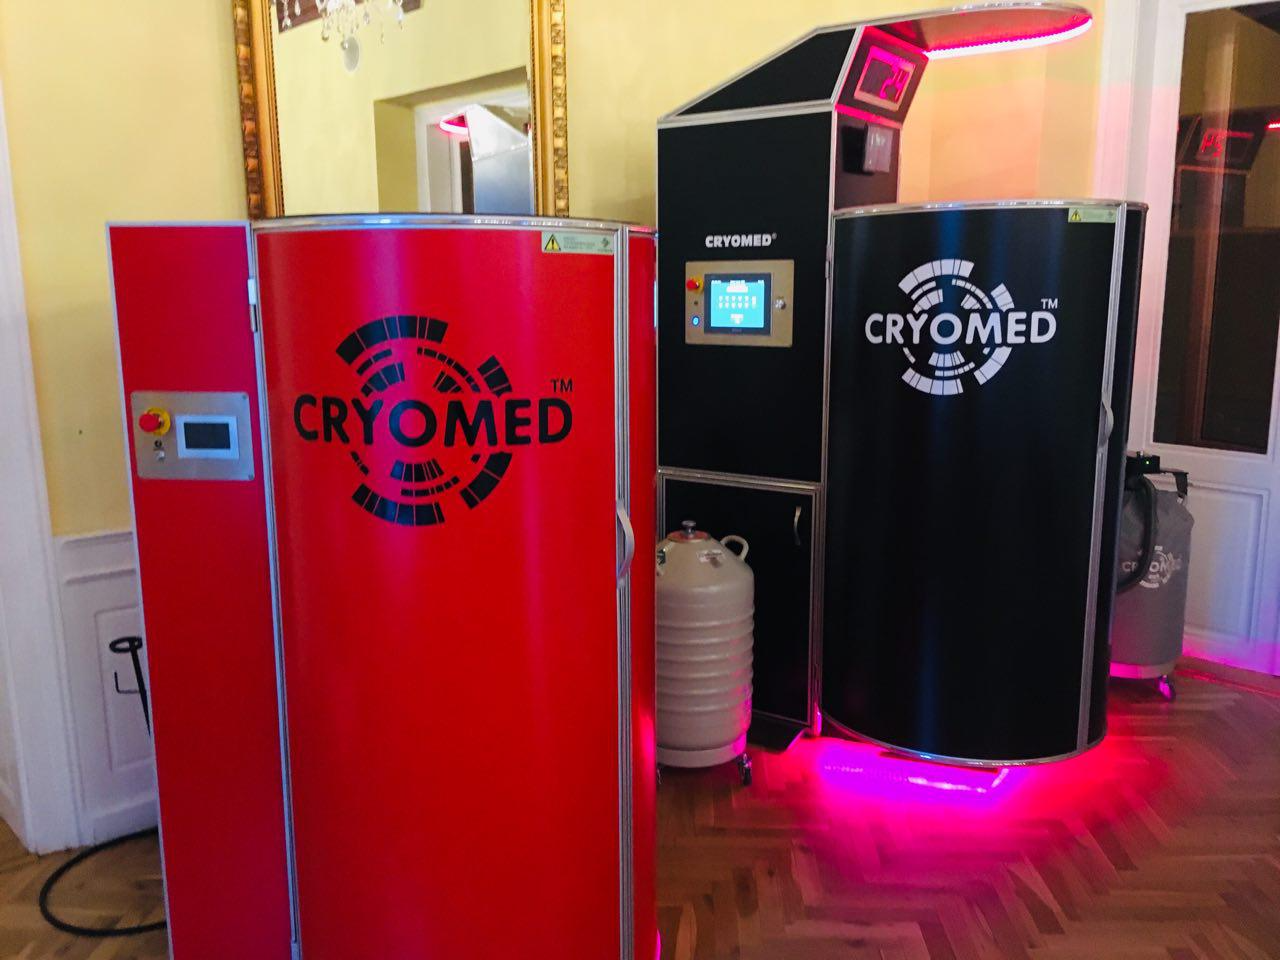  شركة Cryomed تجمع كافة الموزعين في الاجتماع السنوي الأول